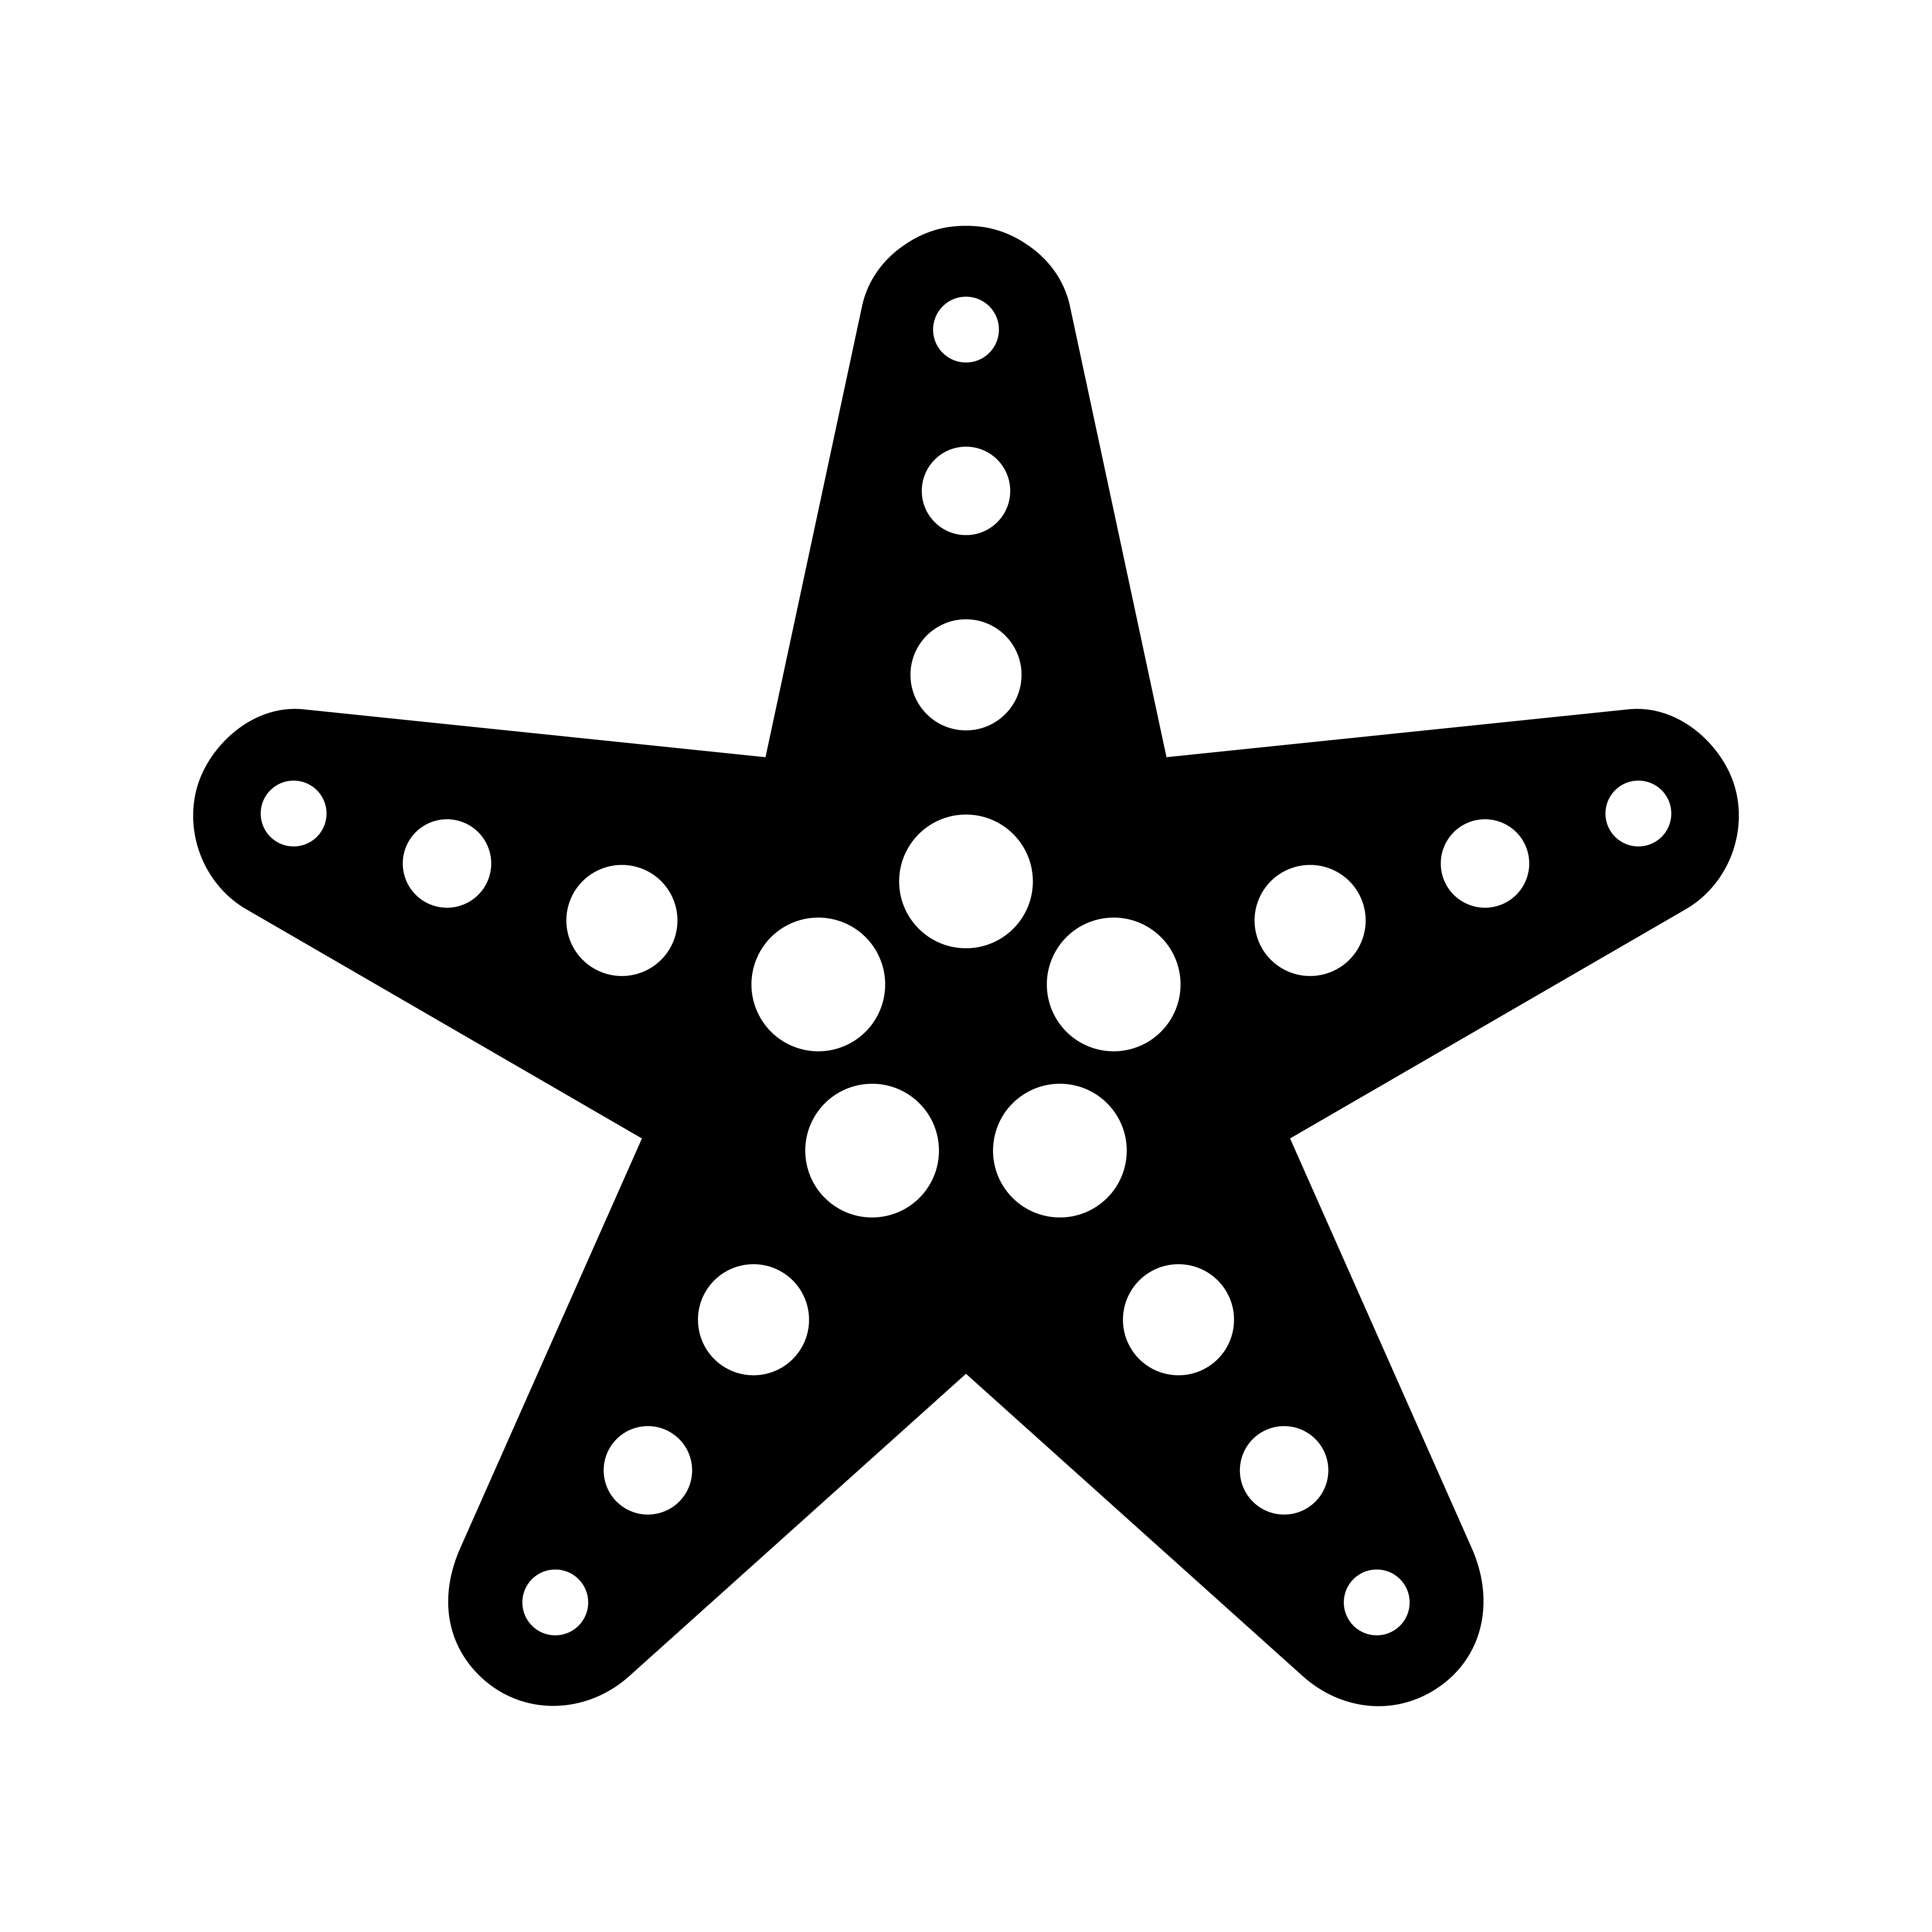 Download Starfish sea creature vector icon 546449 - Download Free ...